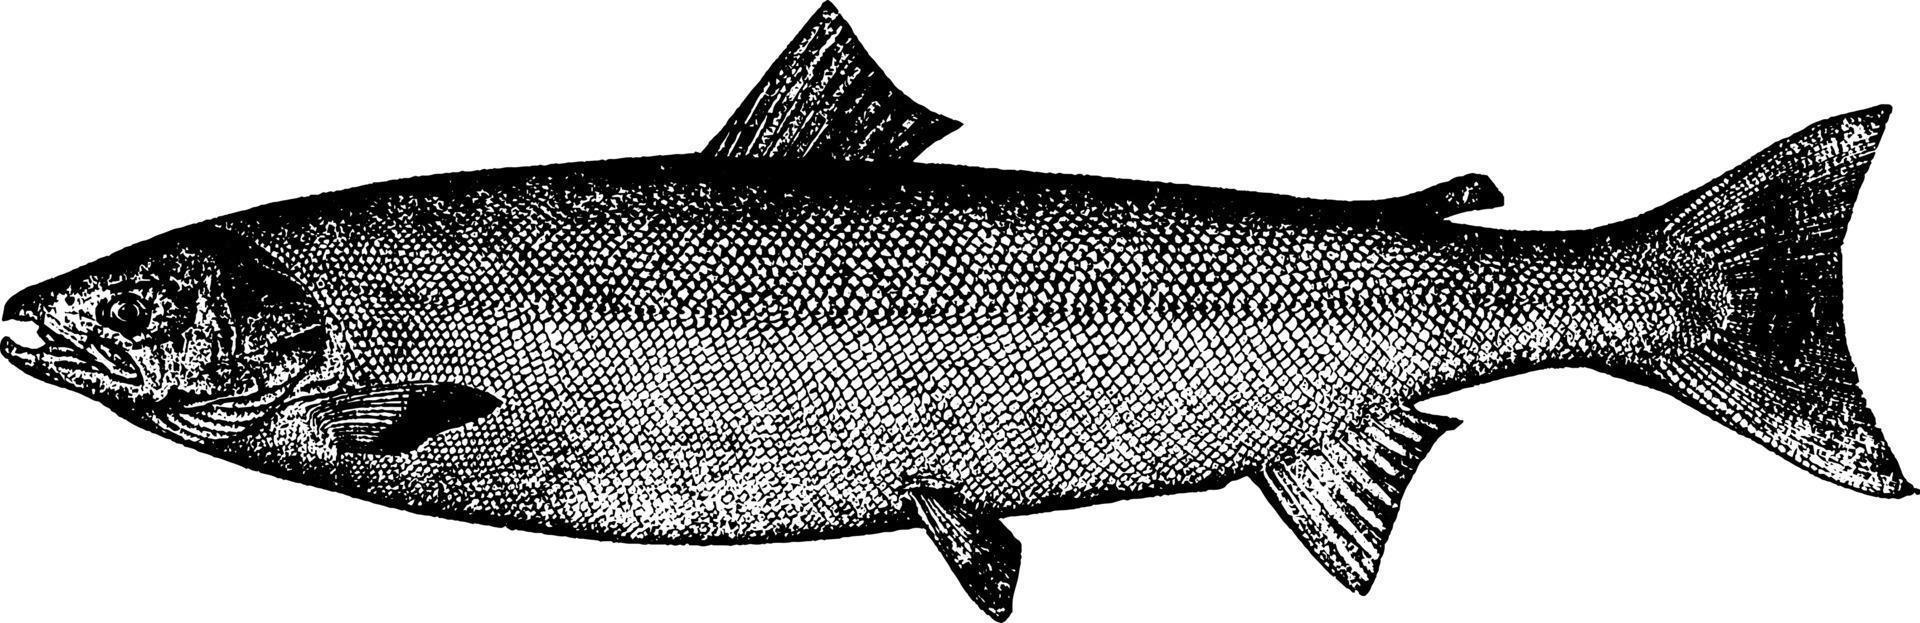 salmón atlántico, ilustración vintage. vector